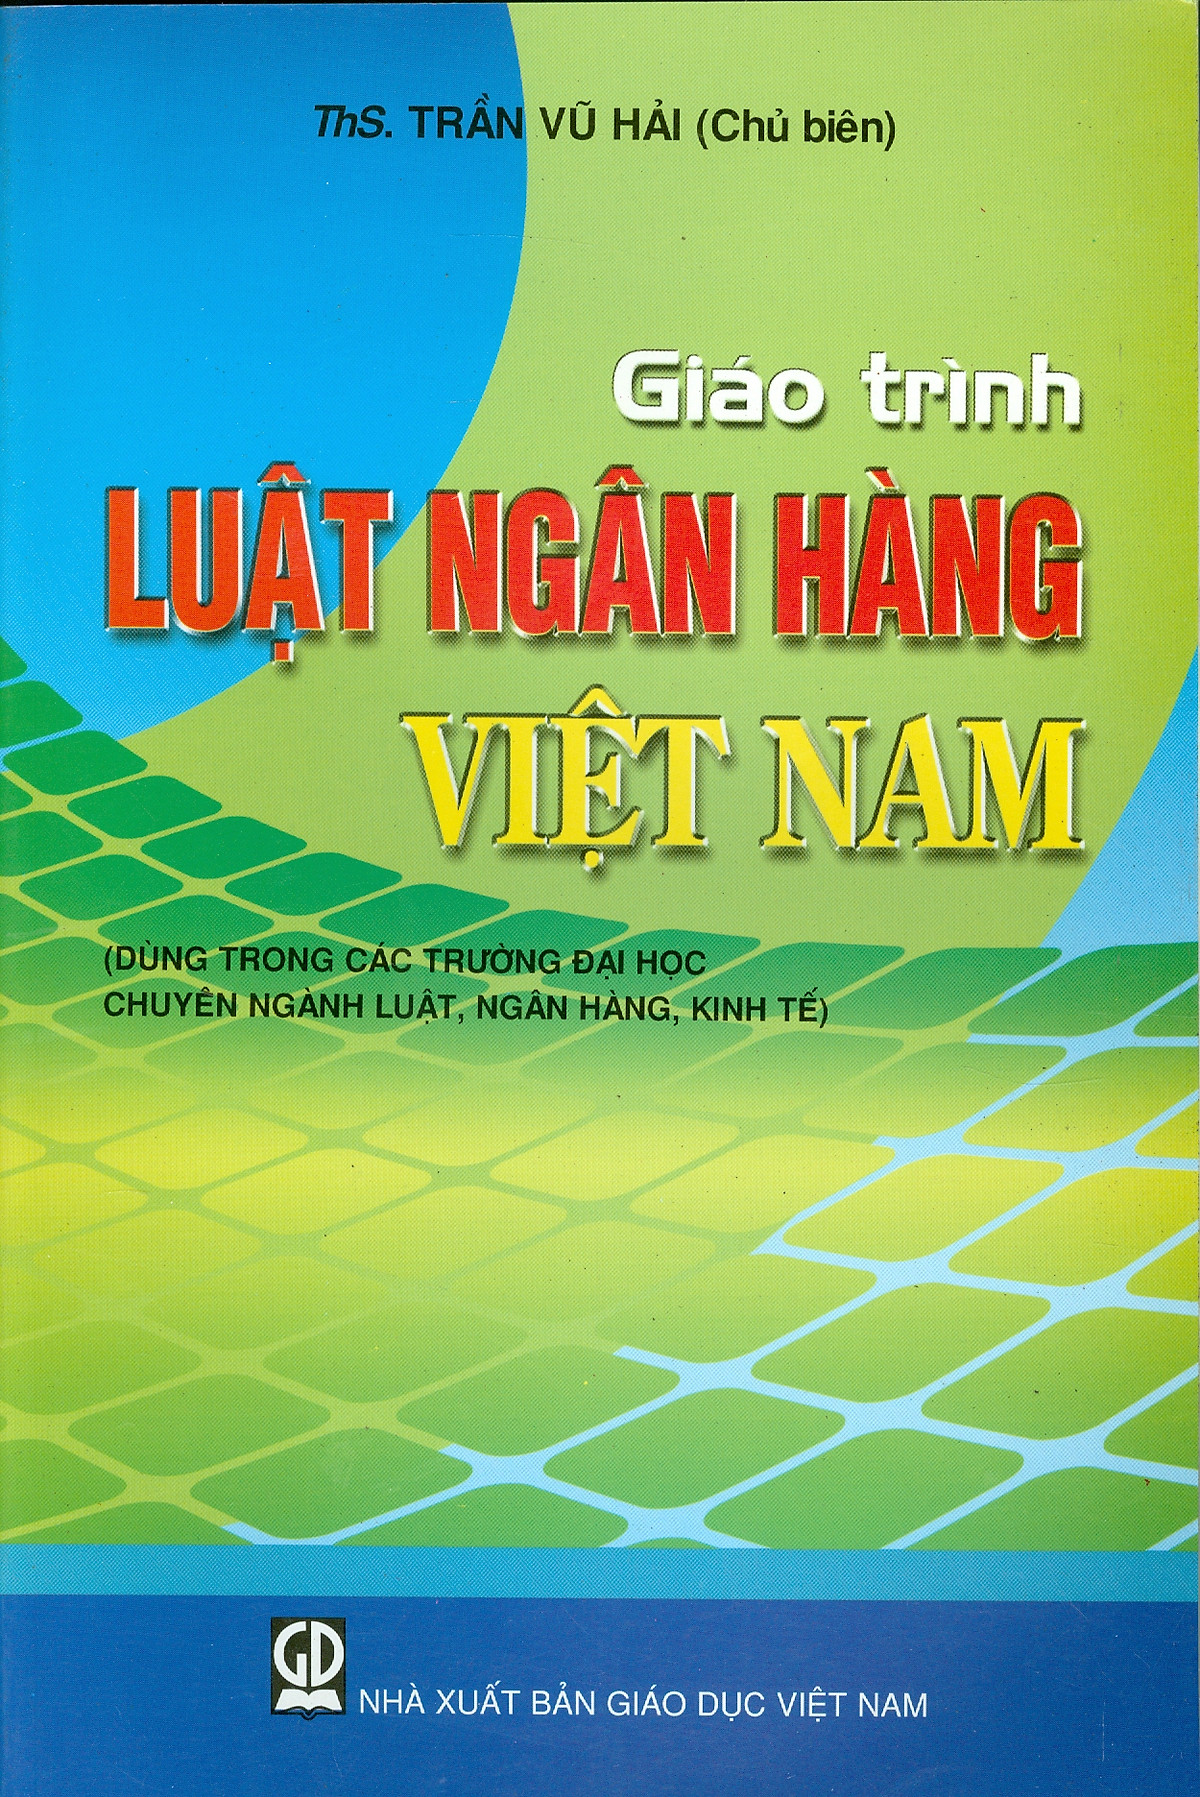 Giáo Trình Luật Ngân Hàng Việt Nam (Dùng trong các trường đại học chuyên ngành luật, ngân hàng, kinh tế)